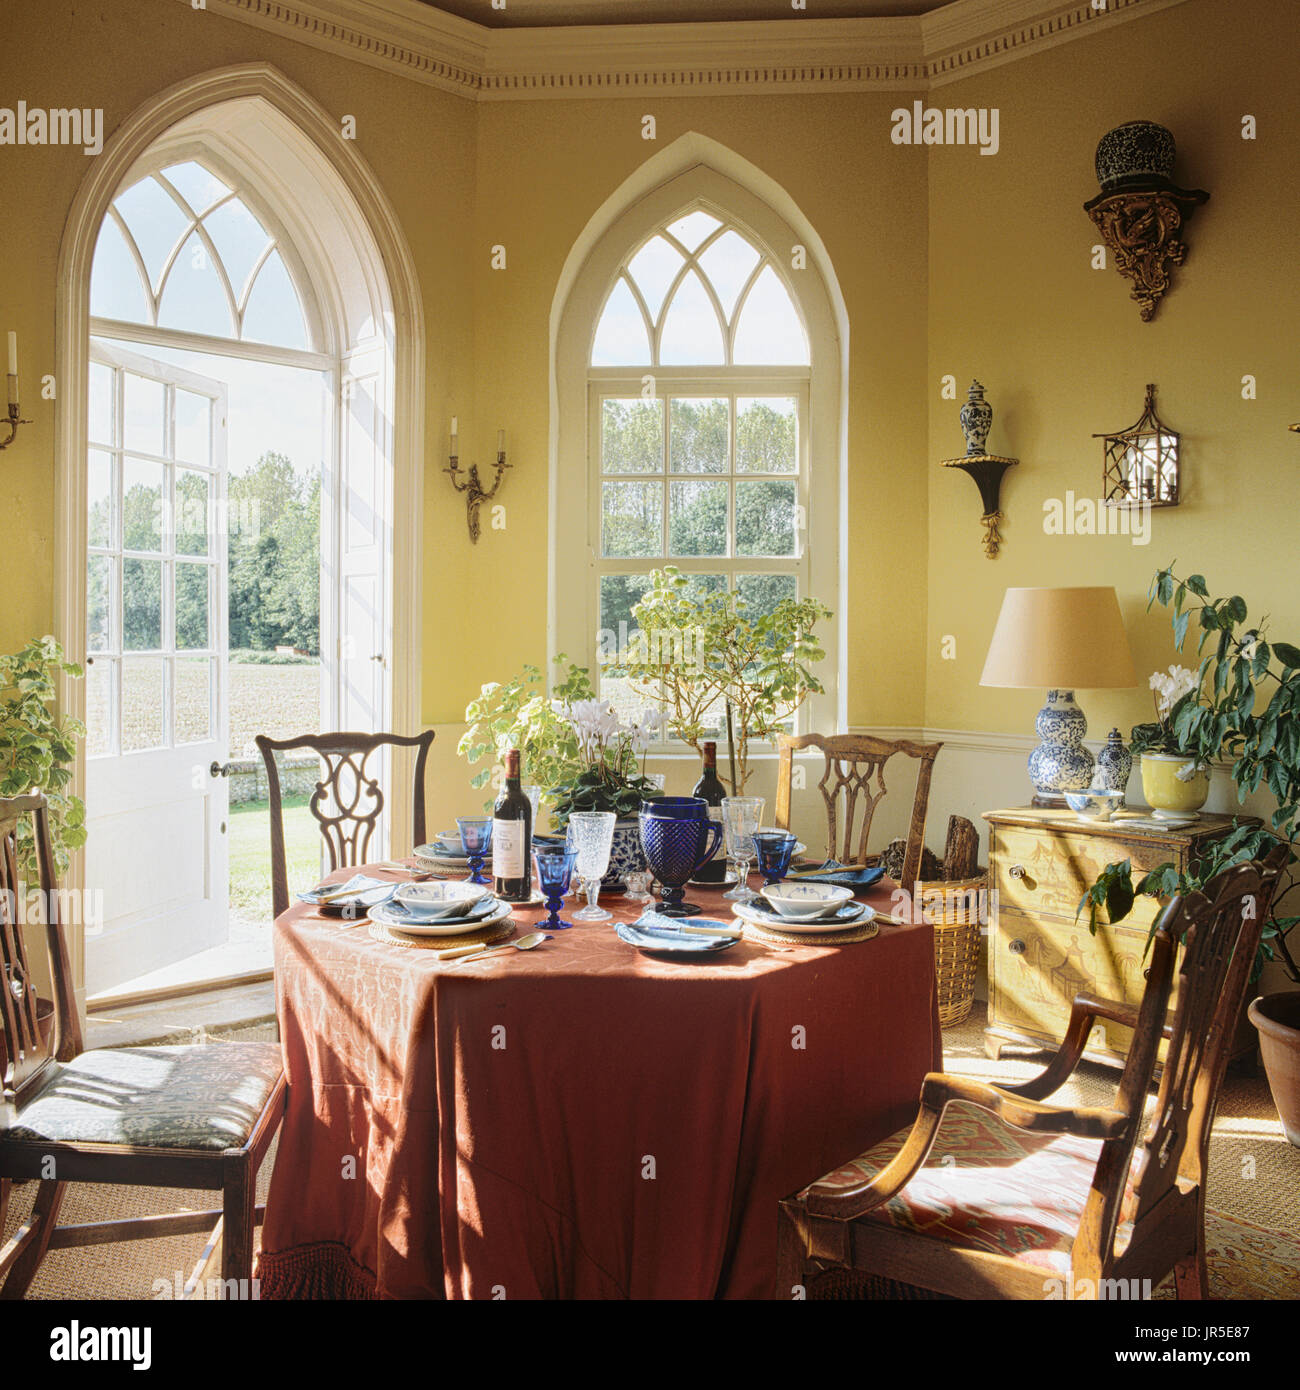 Salle à manger avec fenêtres de style gothique Banque D'Images